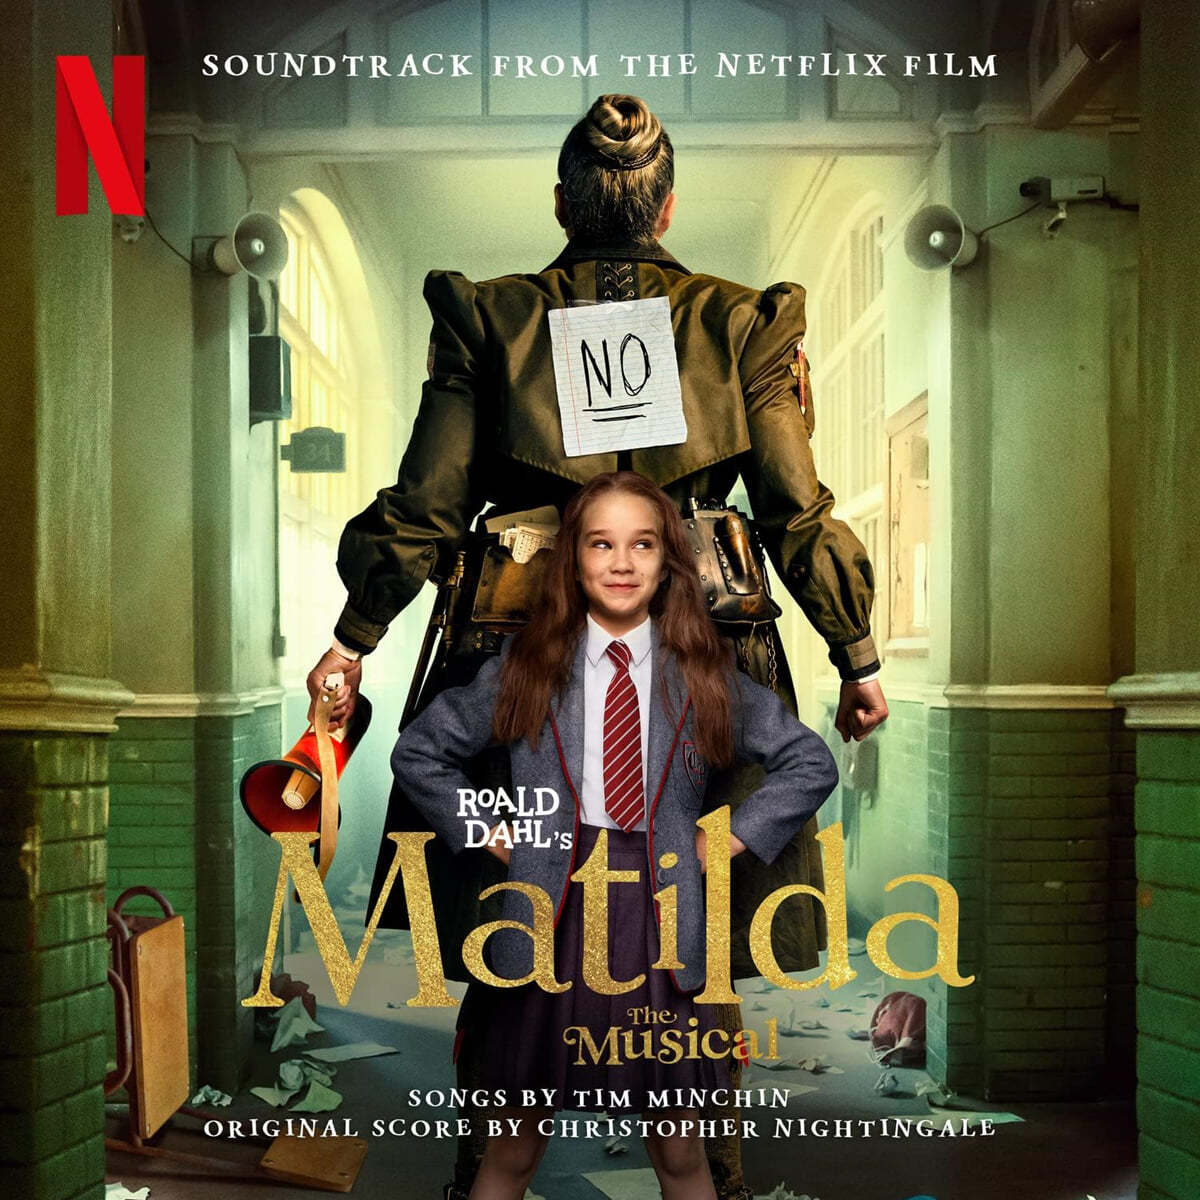 로알드 달의 뮤지컬 마틸다 영화음악 (Roald Dahl's Matilda The Musical OST) [라이트 블루 컬러 2LP]